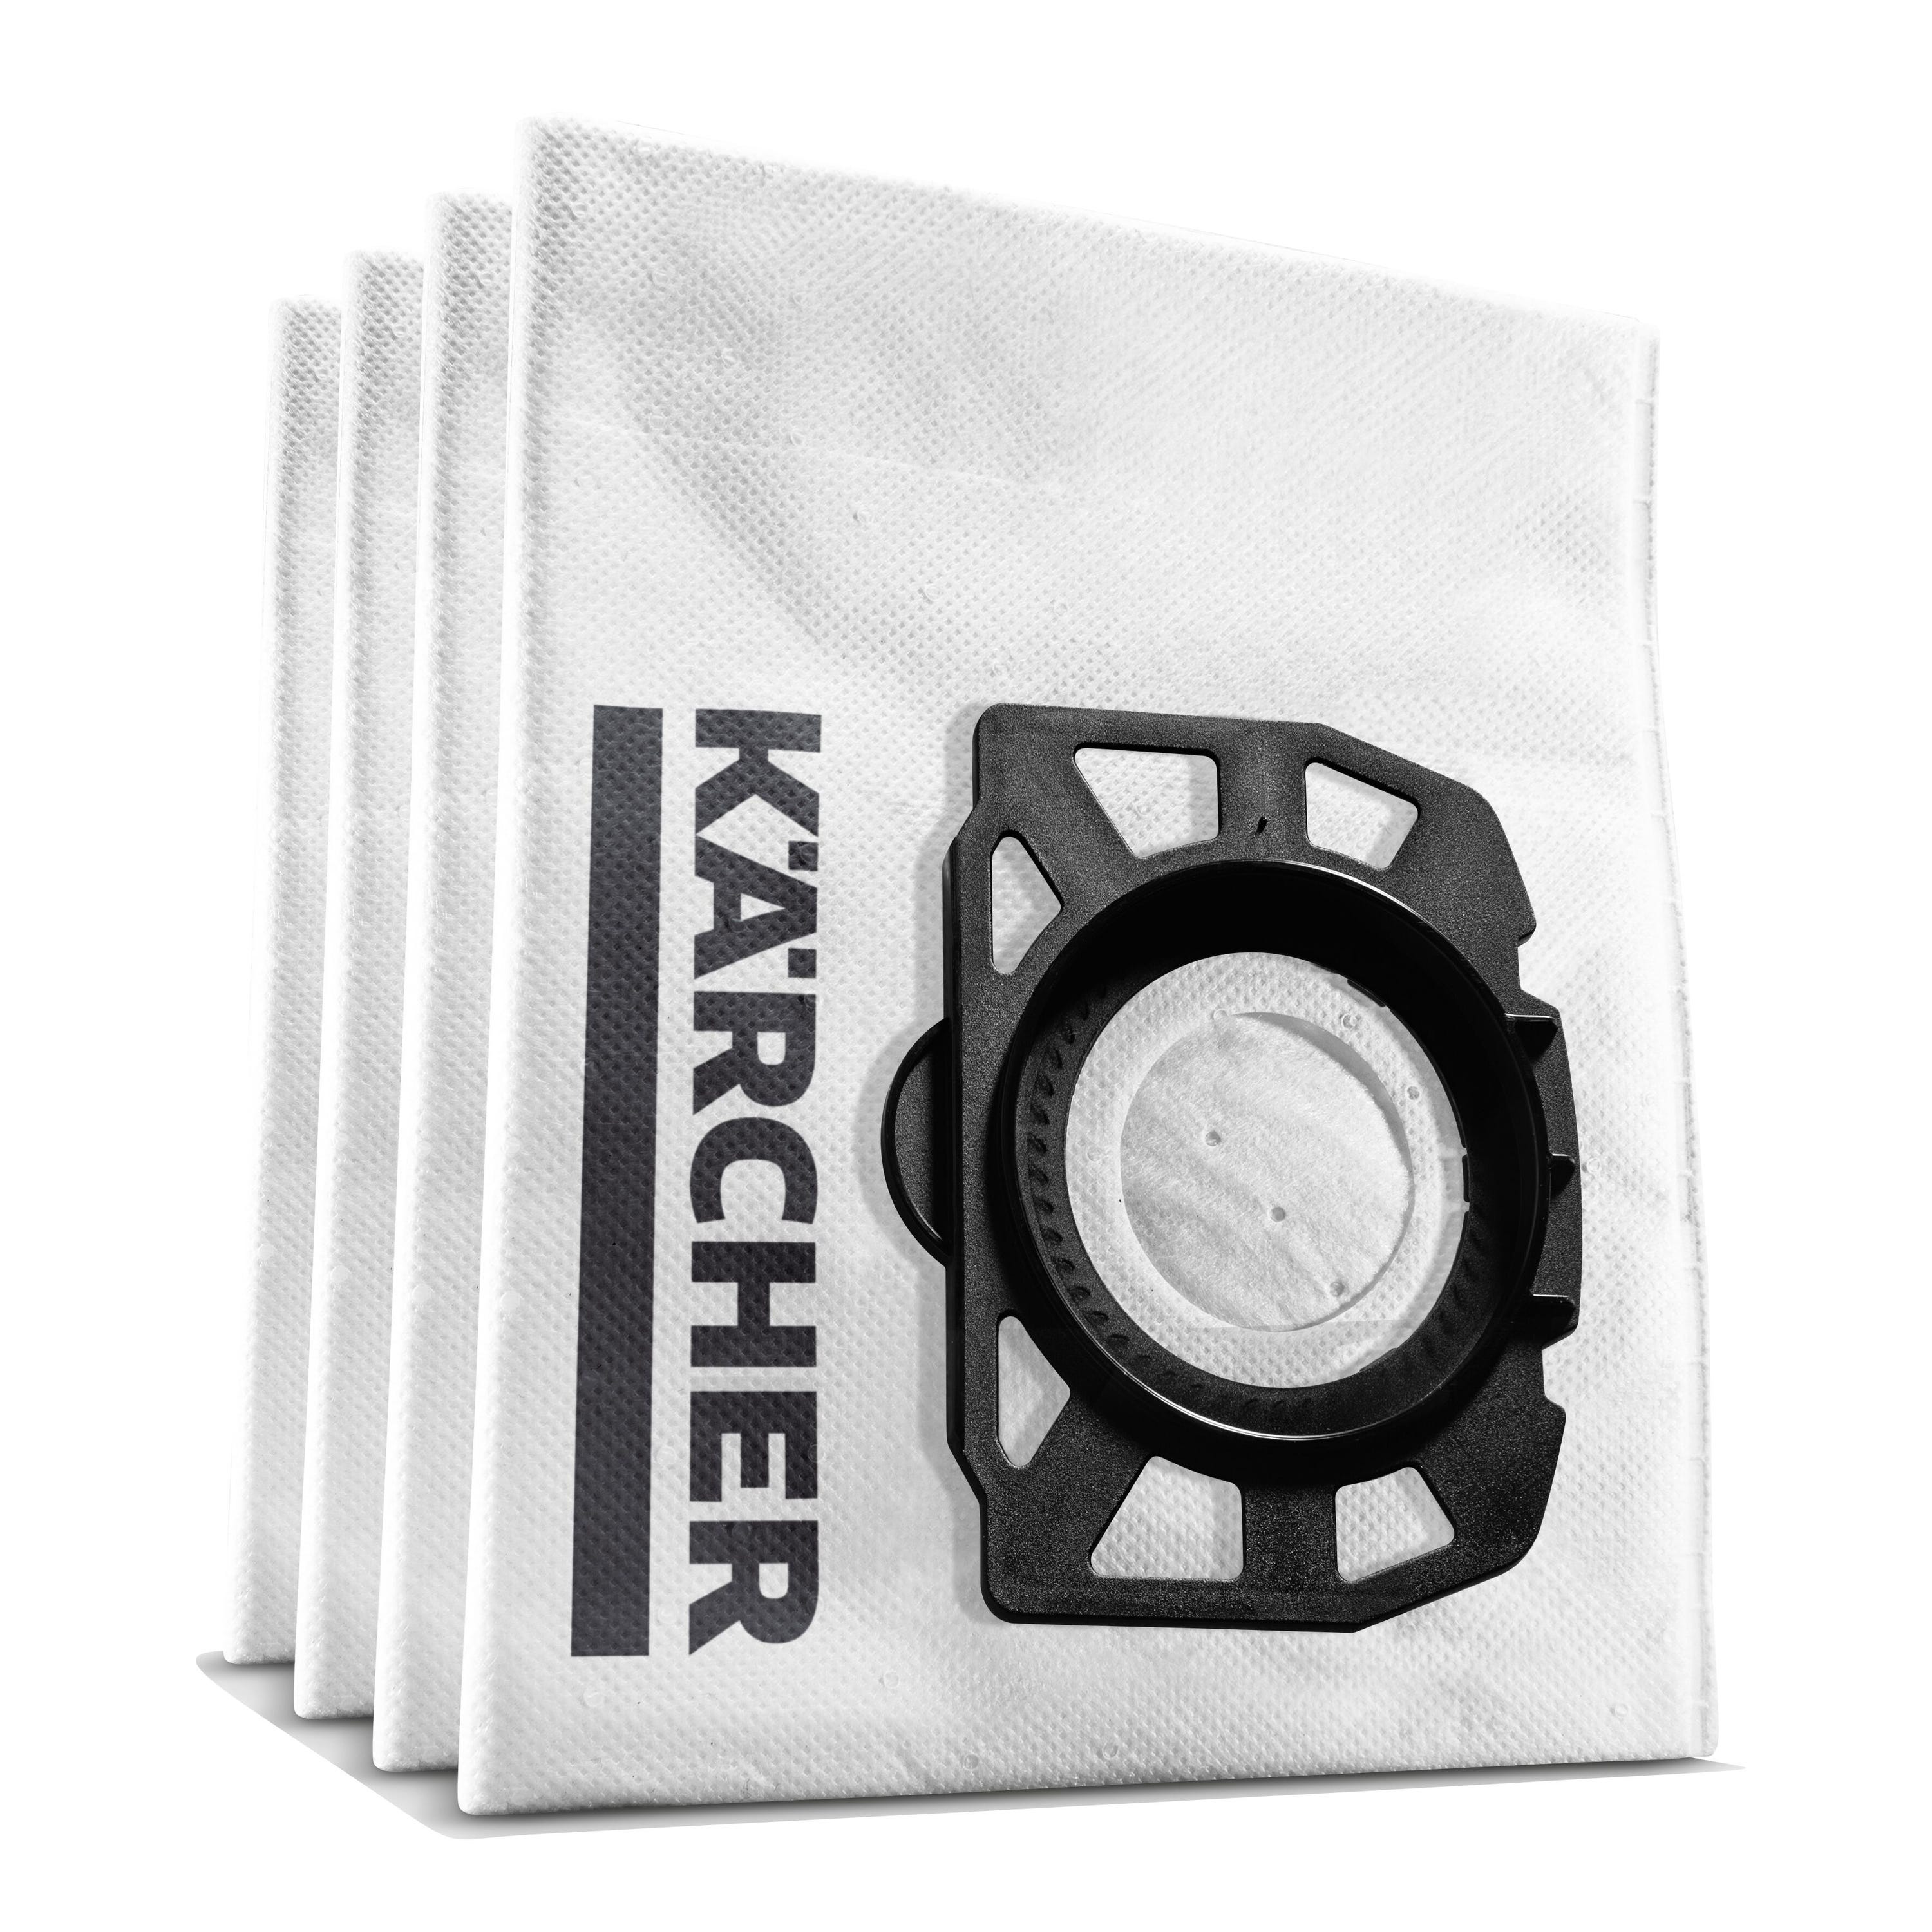 5 Bolsas de filtro de papel para aspiradora Karcher